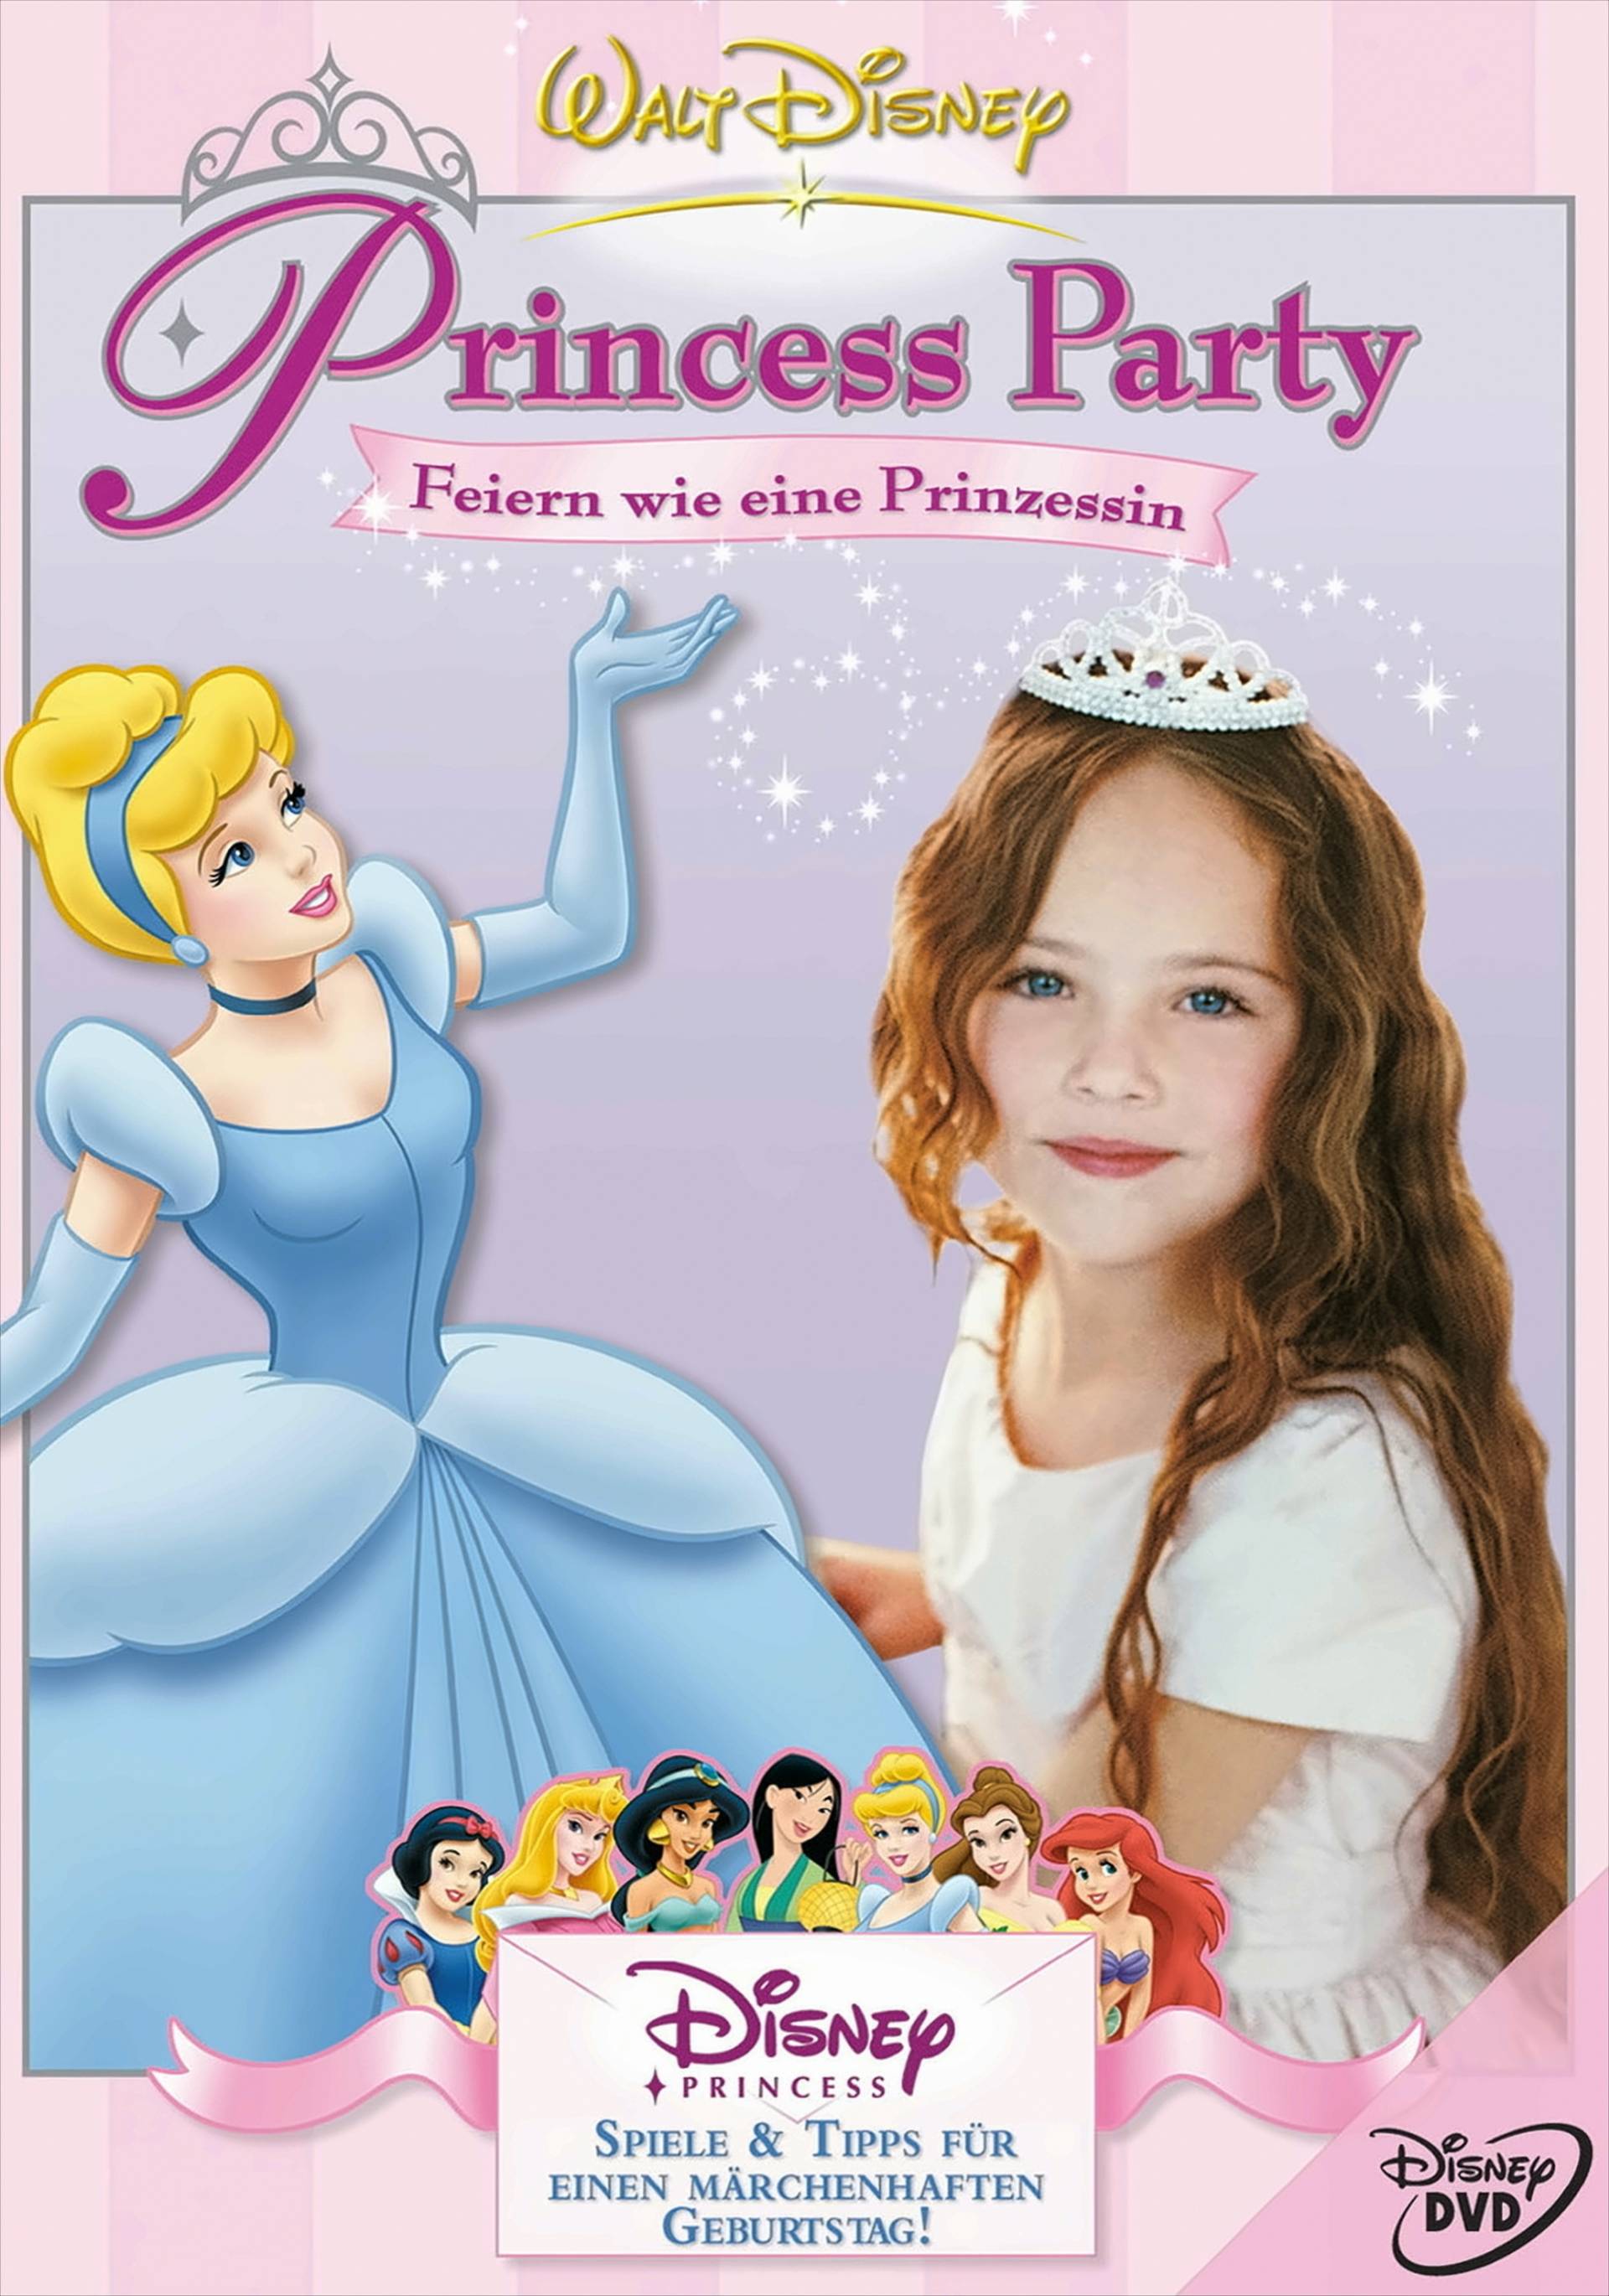 Princess Party - Feiern wie eine Prinzessin von Walt Disney Studios